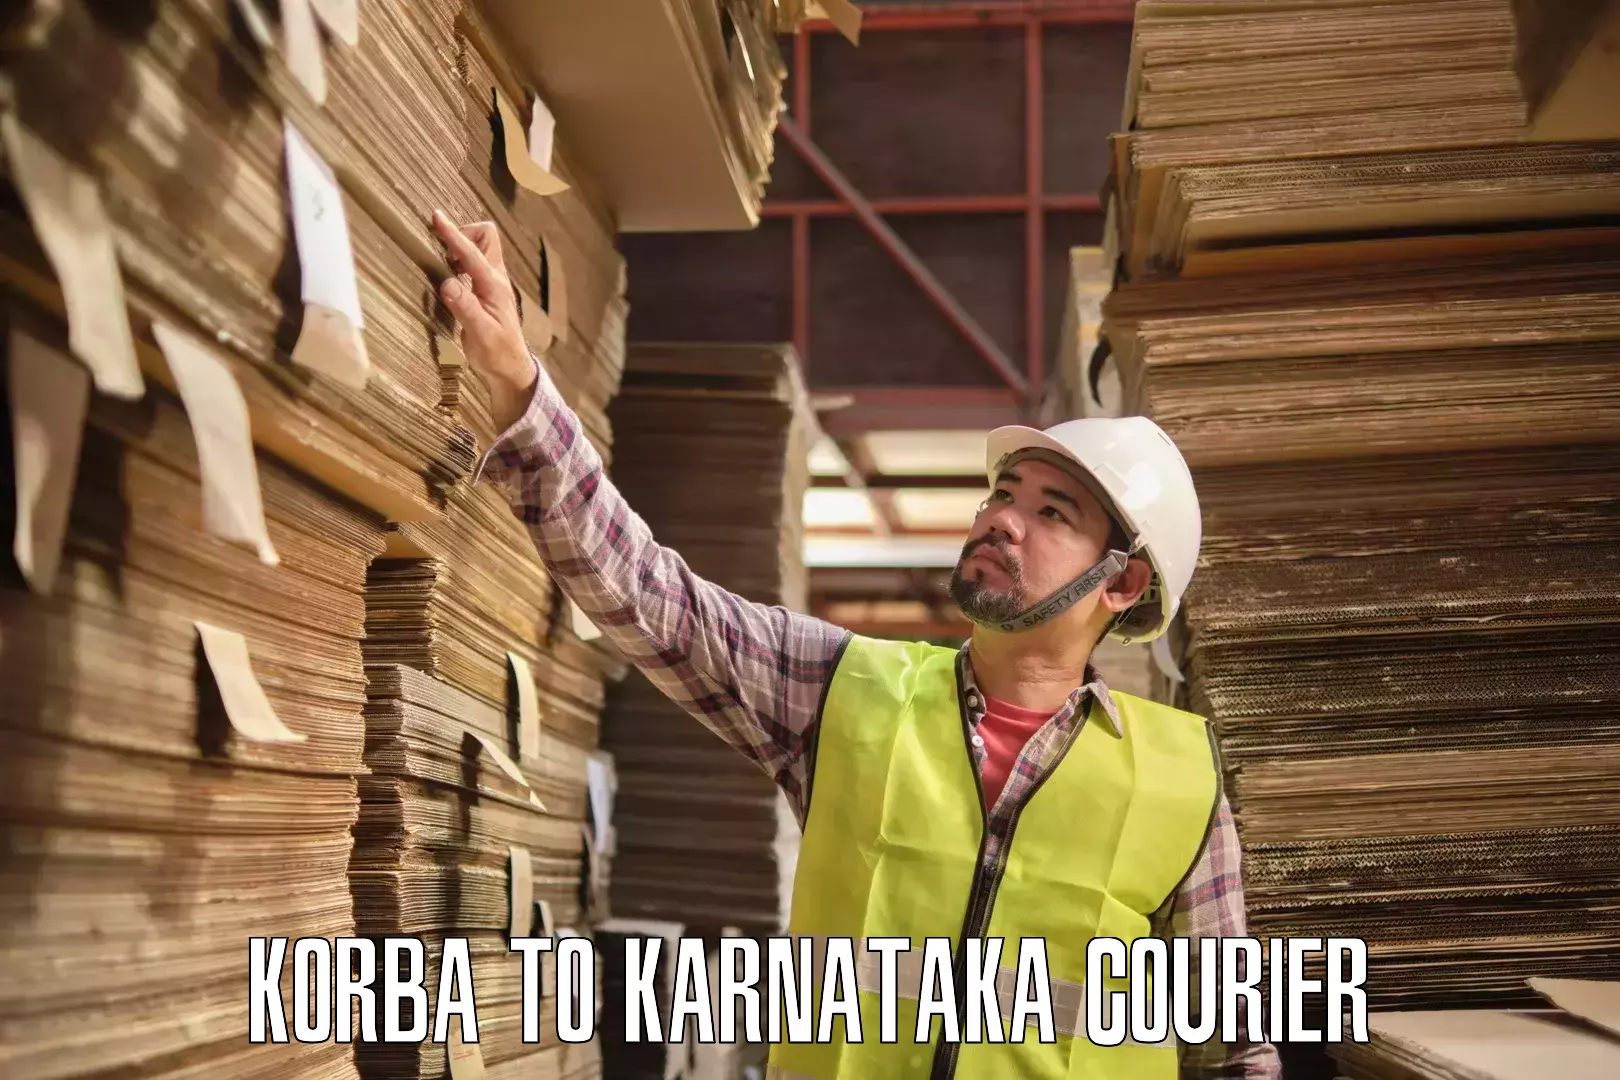 High-capacity parcel service Korba to Kanakapura